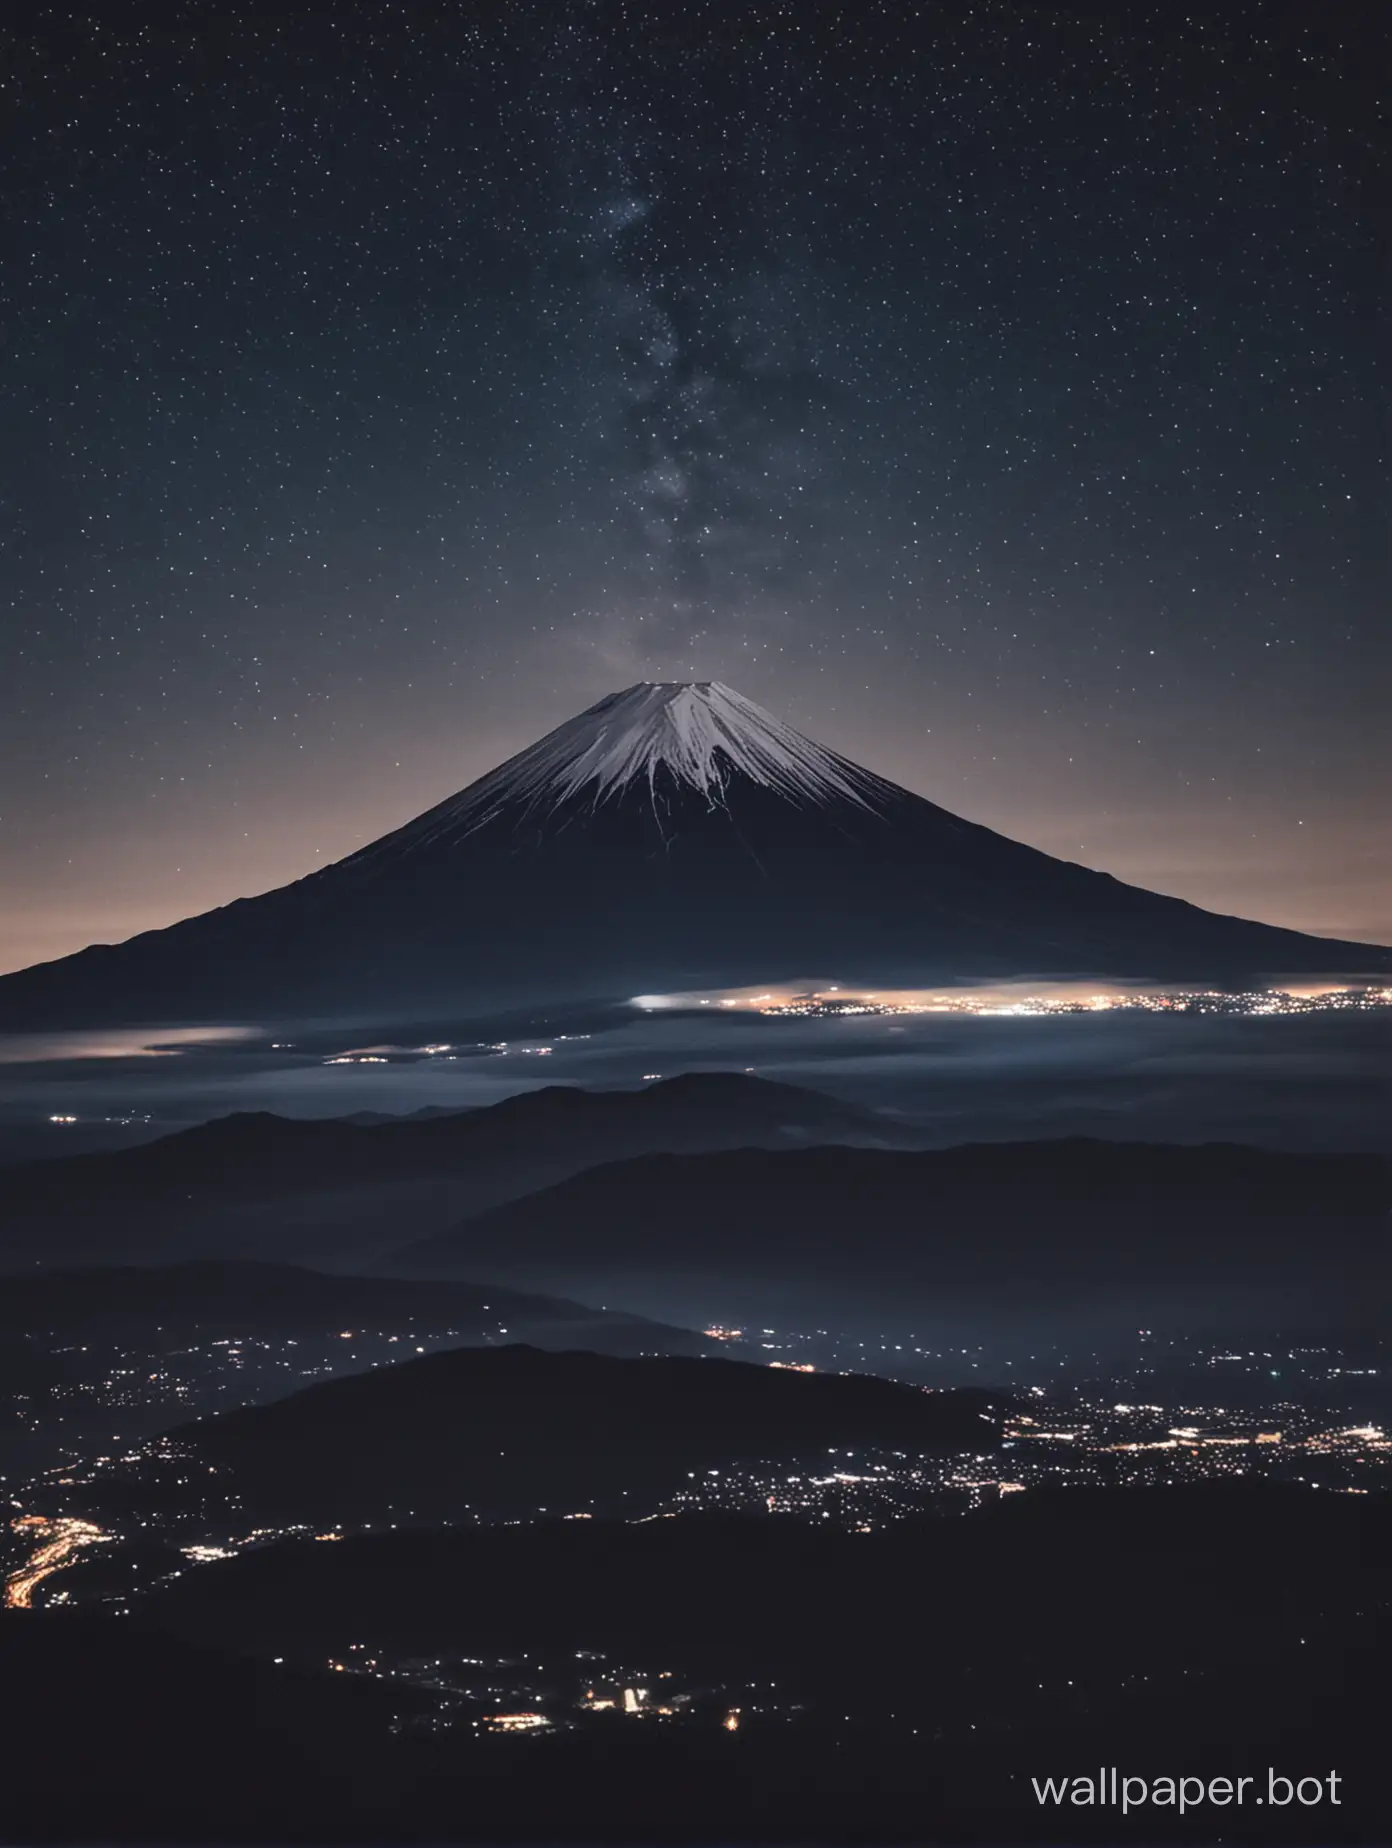 Majestic-Fuji-Mountain-Illuminated-by-Night-Sky